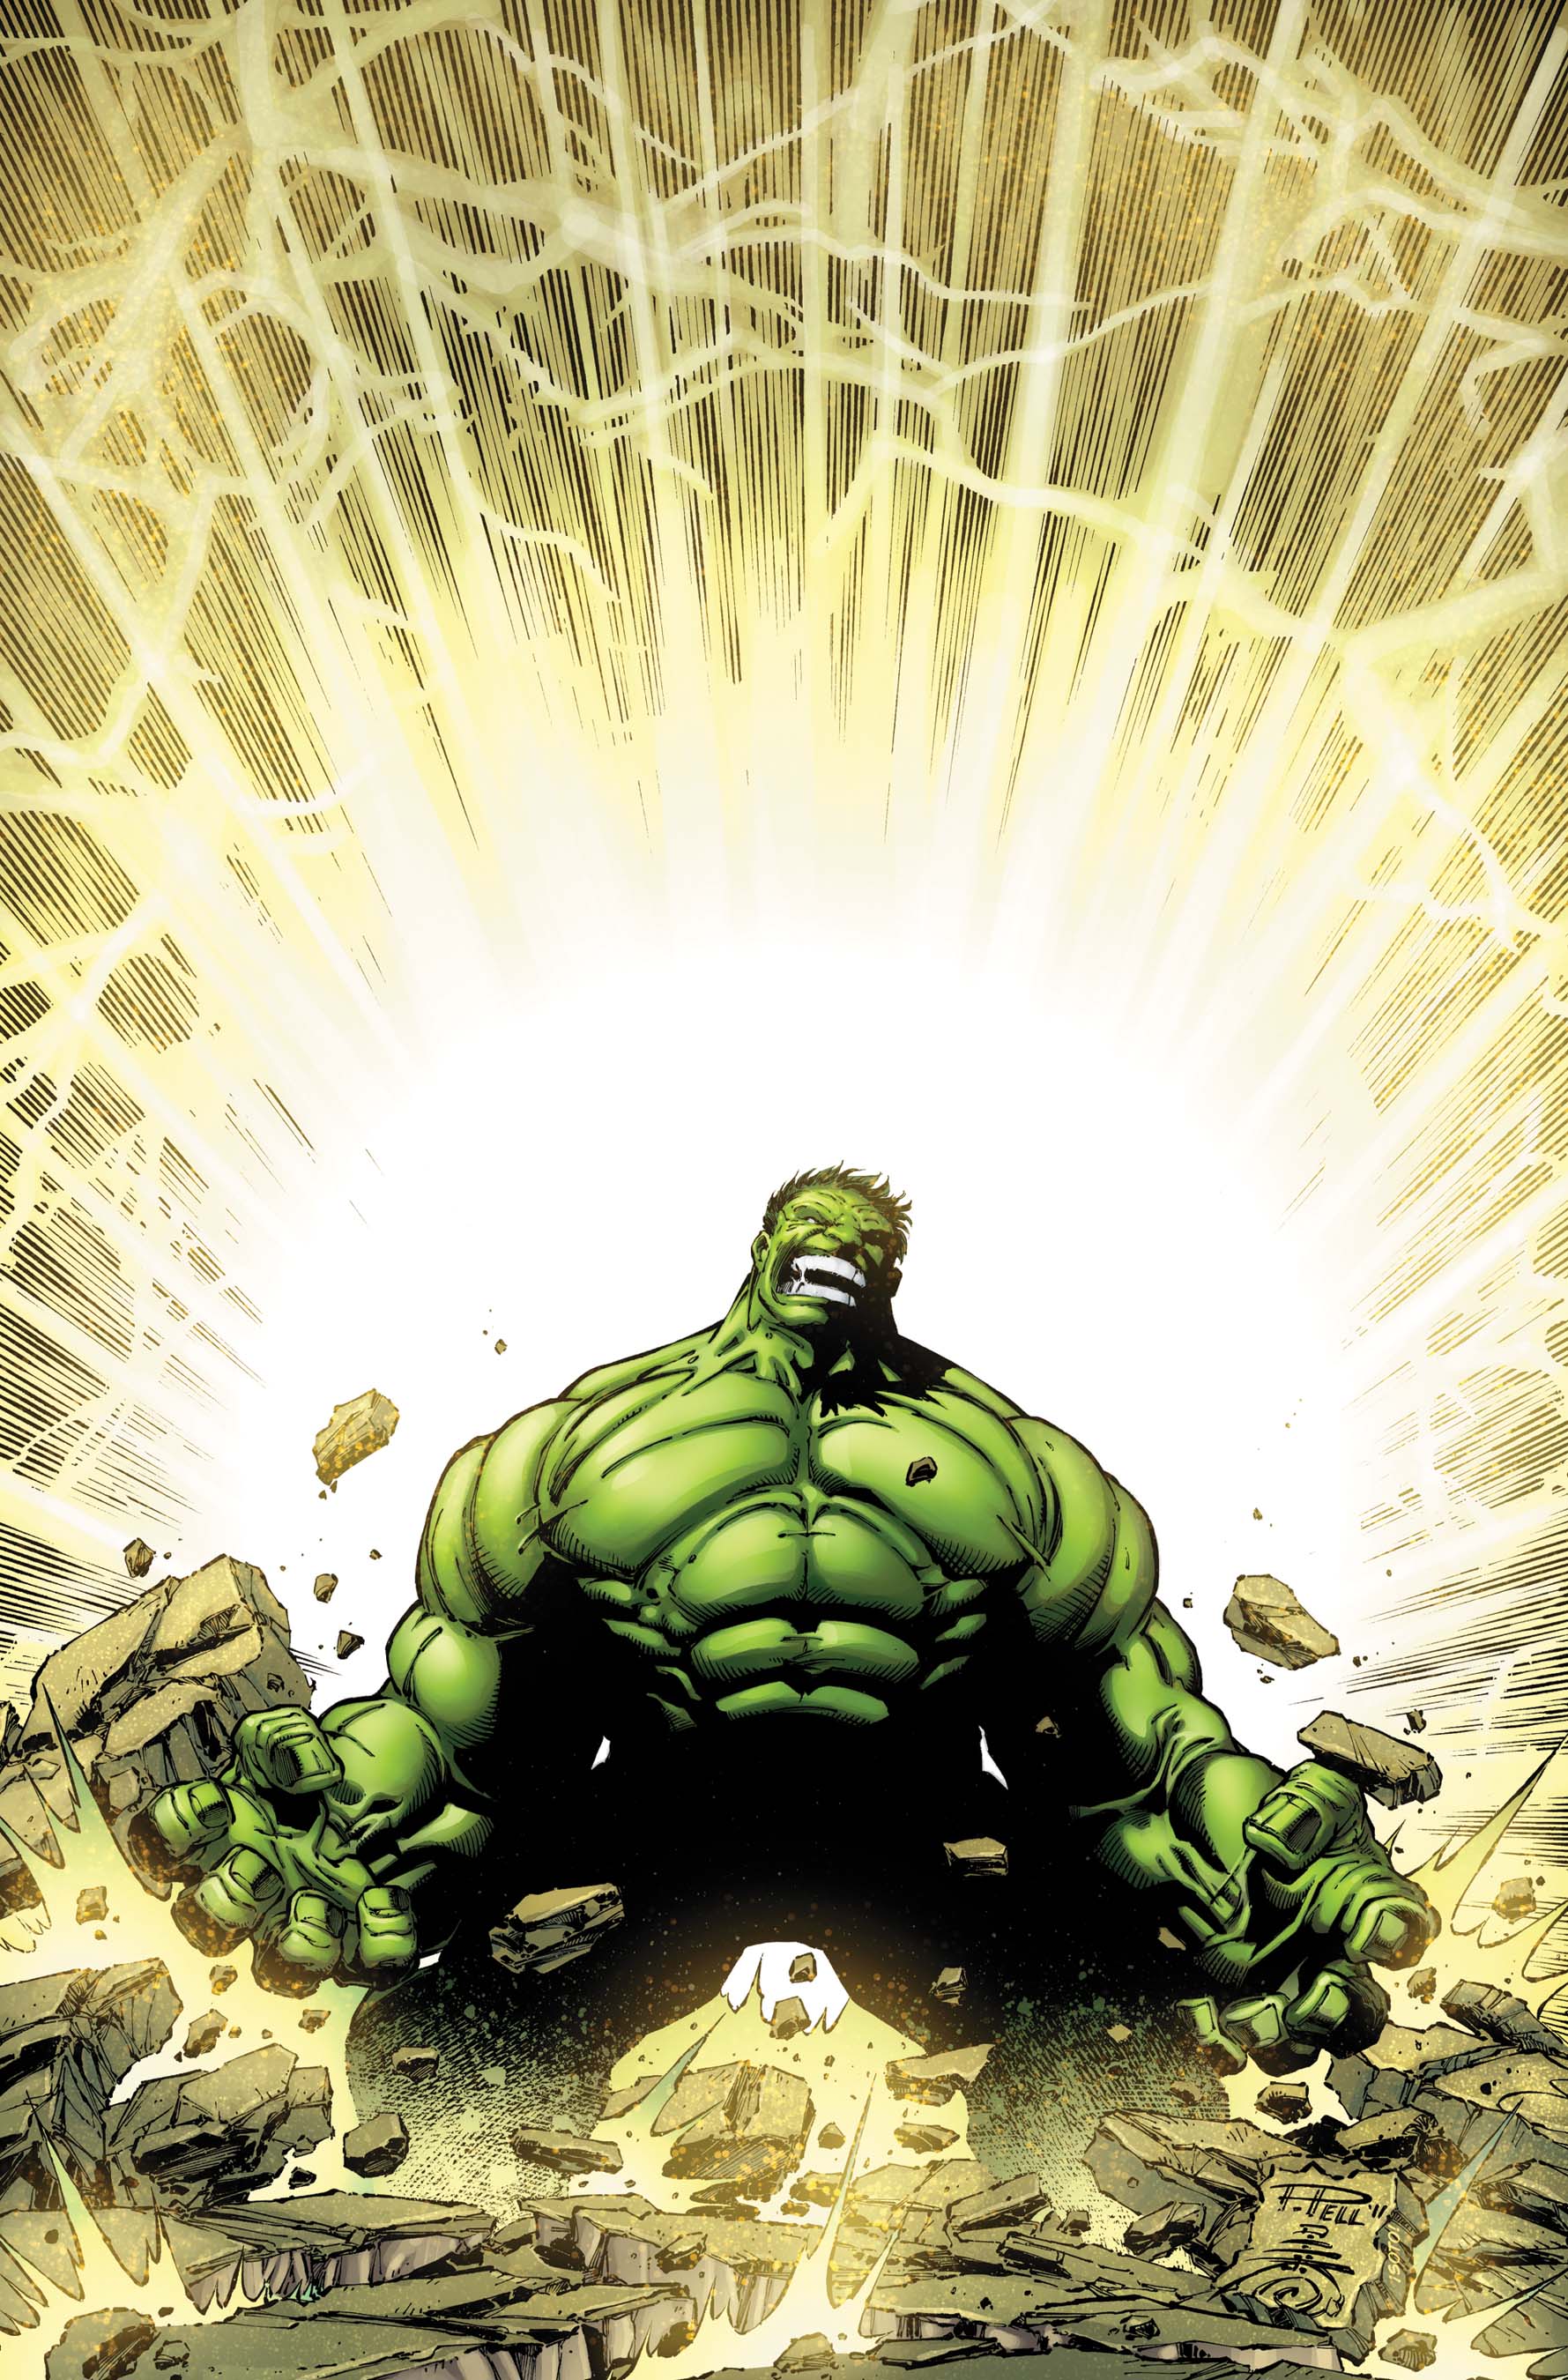 Incredible Hulks (2010) #635 (Pelletier Variant)